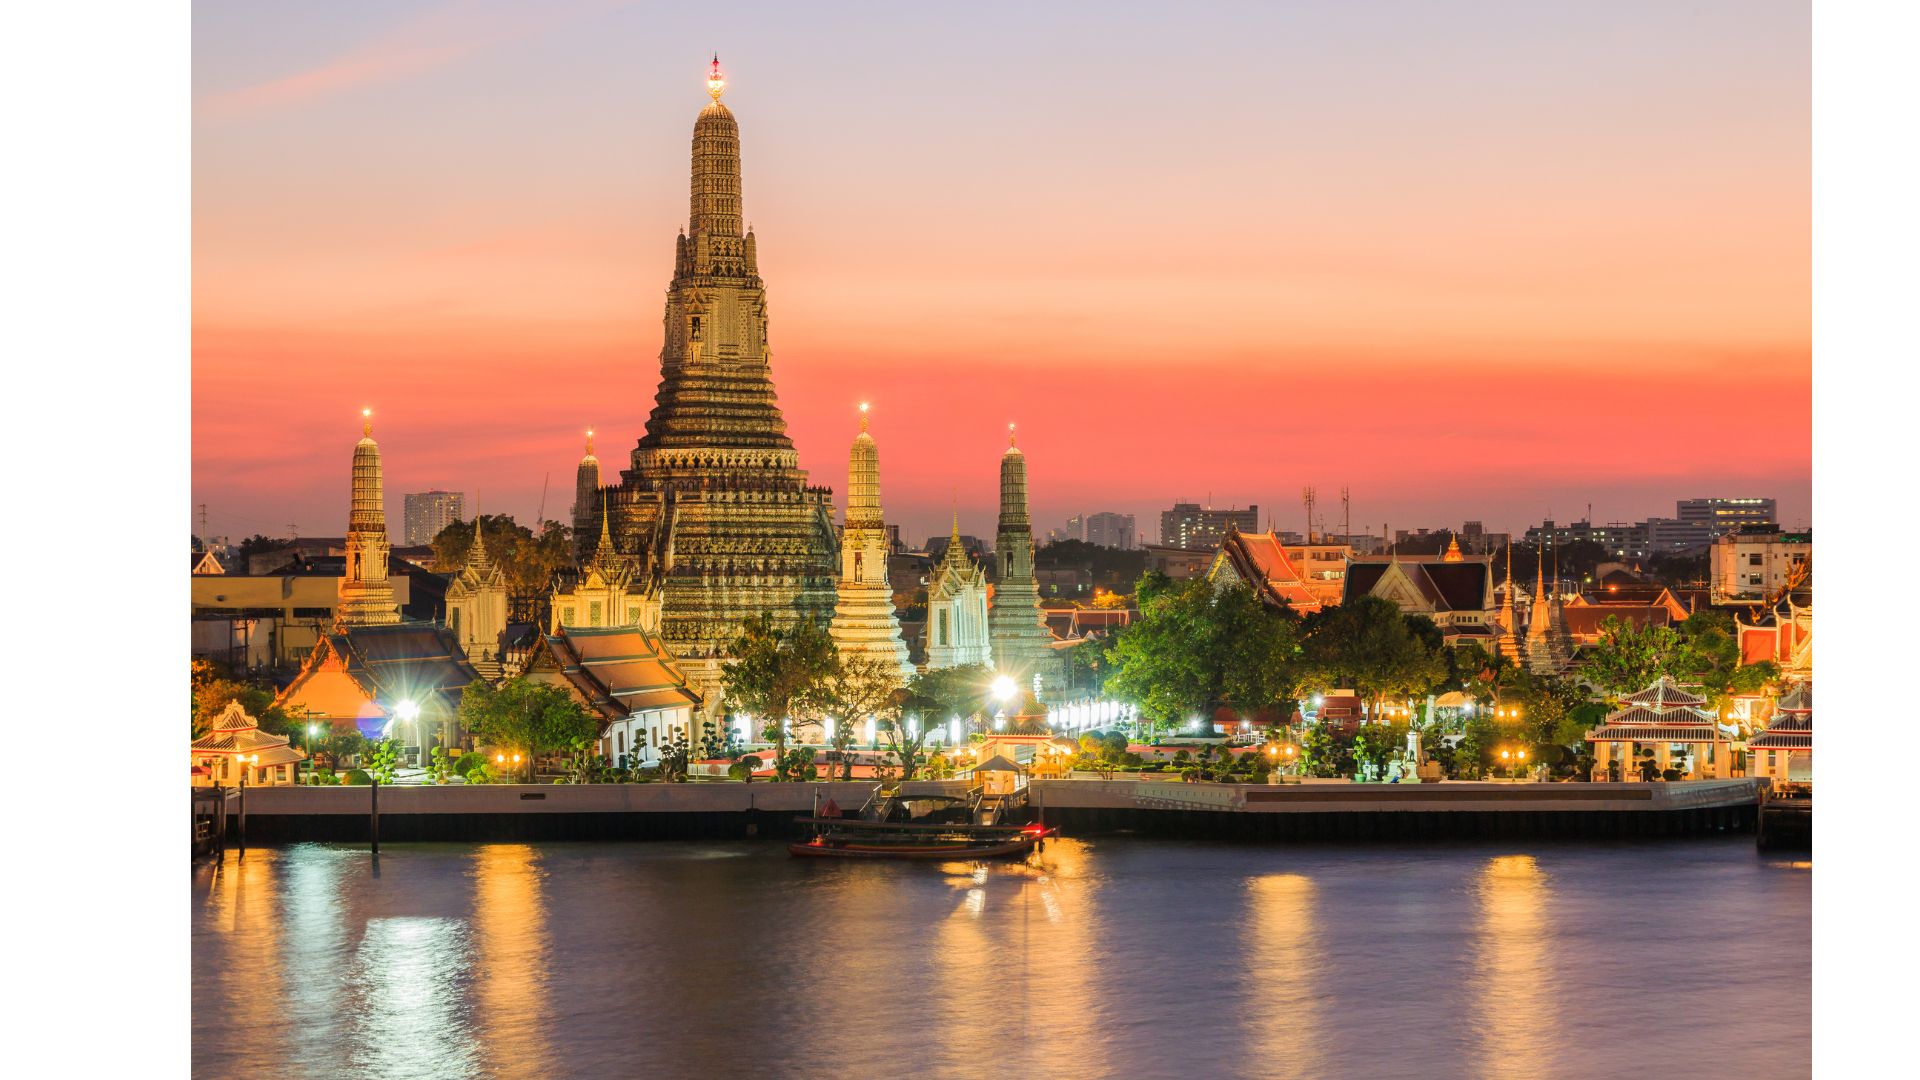 เซ็นทรัล-ททท.-พันธมิตร ผลักดันให้ไทยเป็นจุดหมายท่องเที่ยวระดับโลก สร้างรายได้ 900 ล้านบาท 